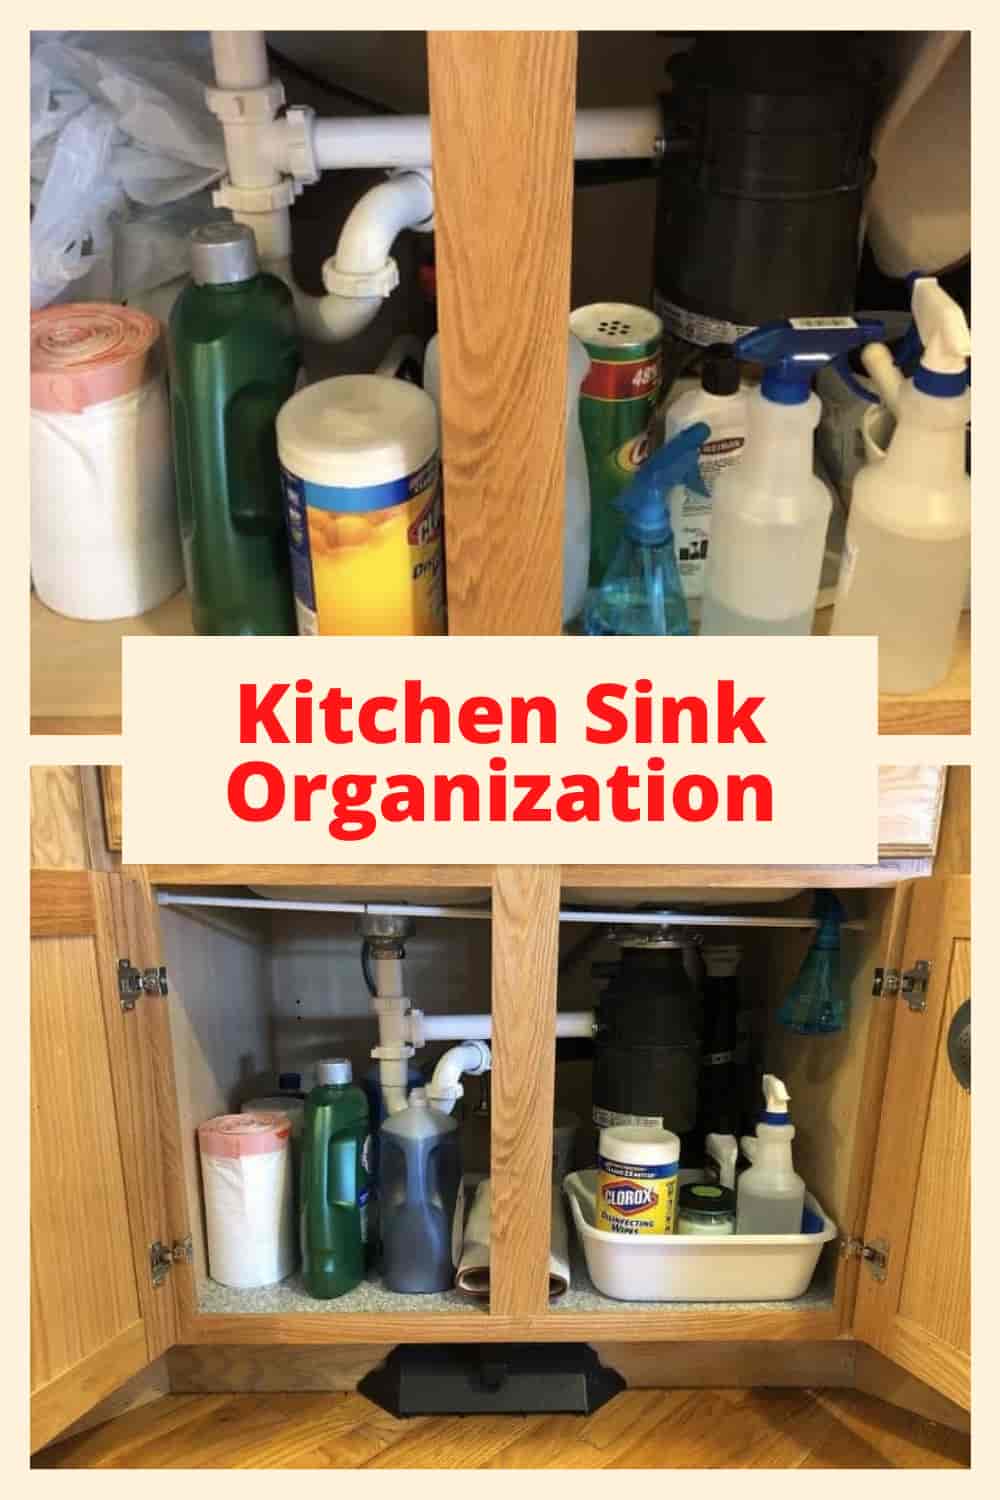 https://chascrazycreations.com/wp-content/uploads/2020/01/Kitchen-Sink-Organization.jpg